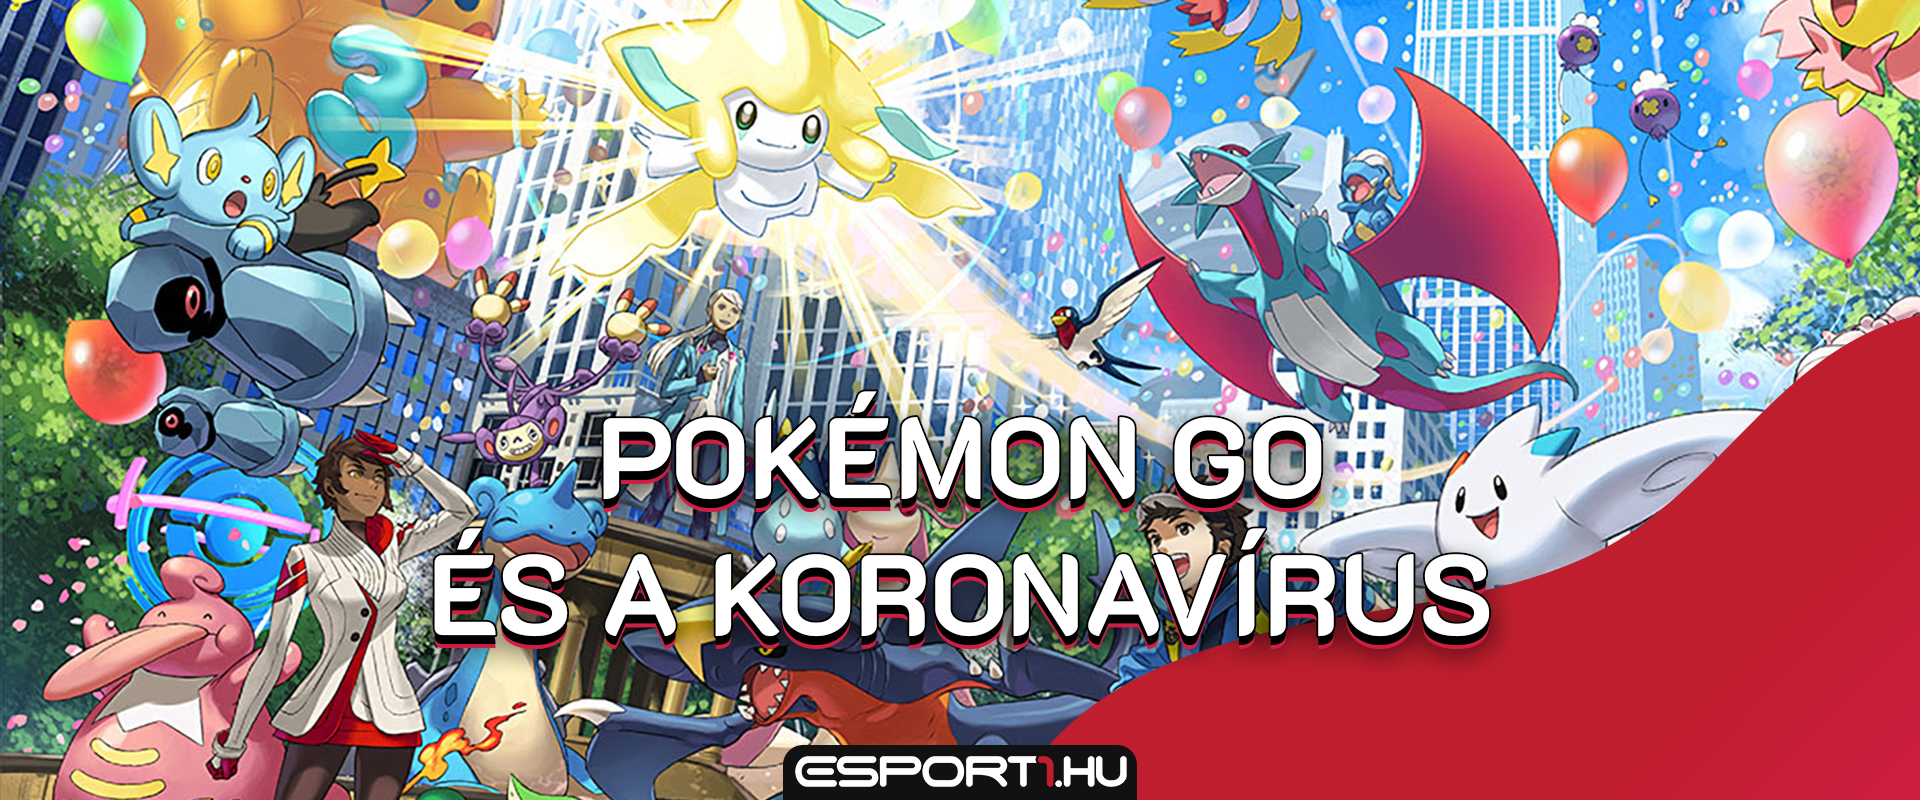 Pokémon Go és az AR játékok: megpecsételheti a sorsukat a koronavírus?